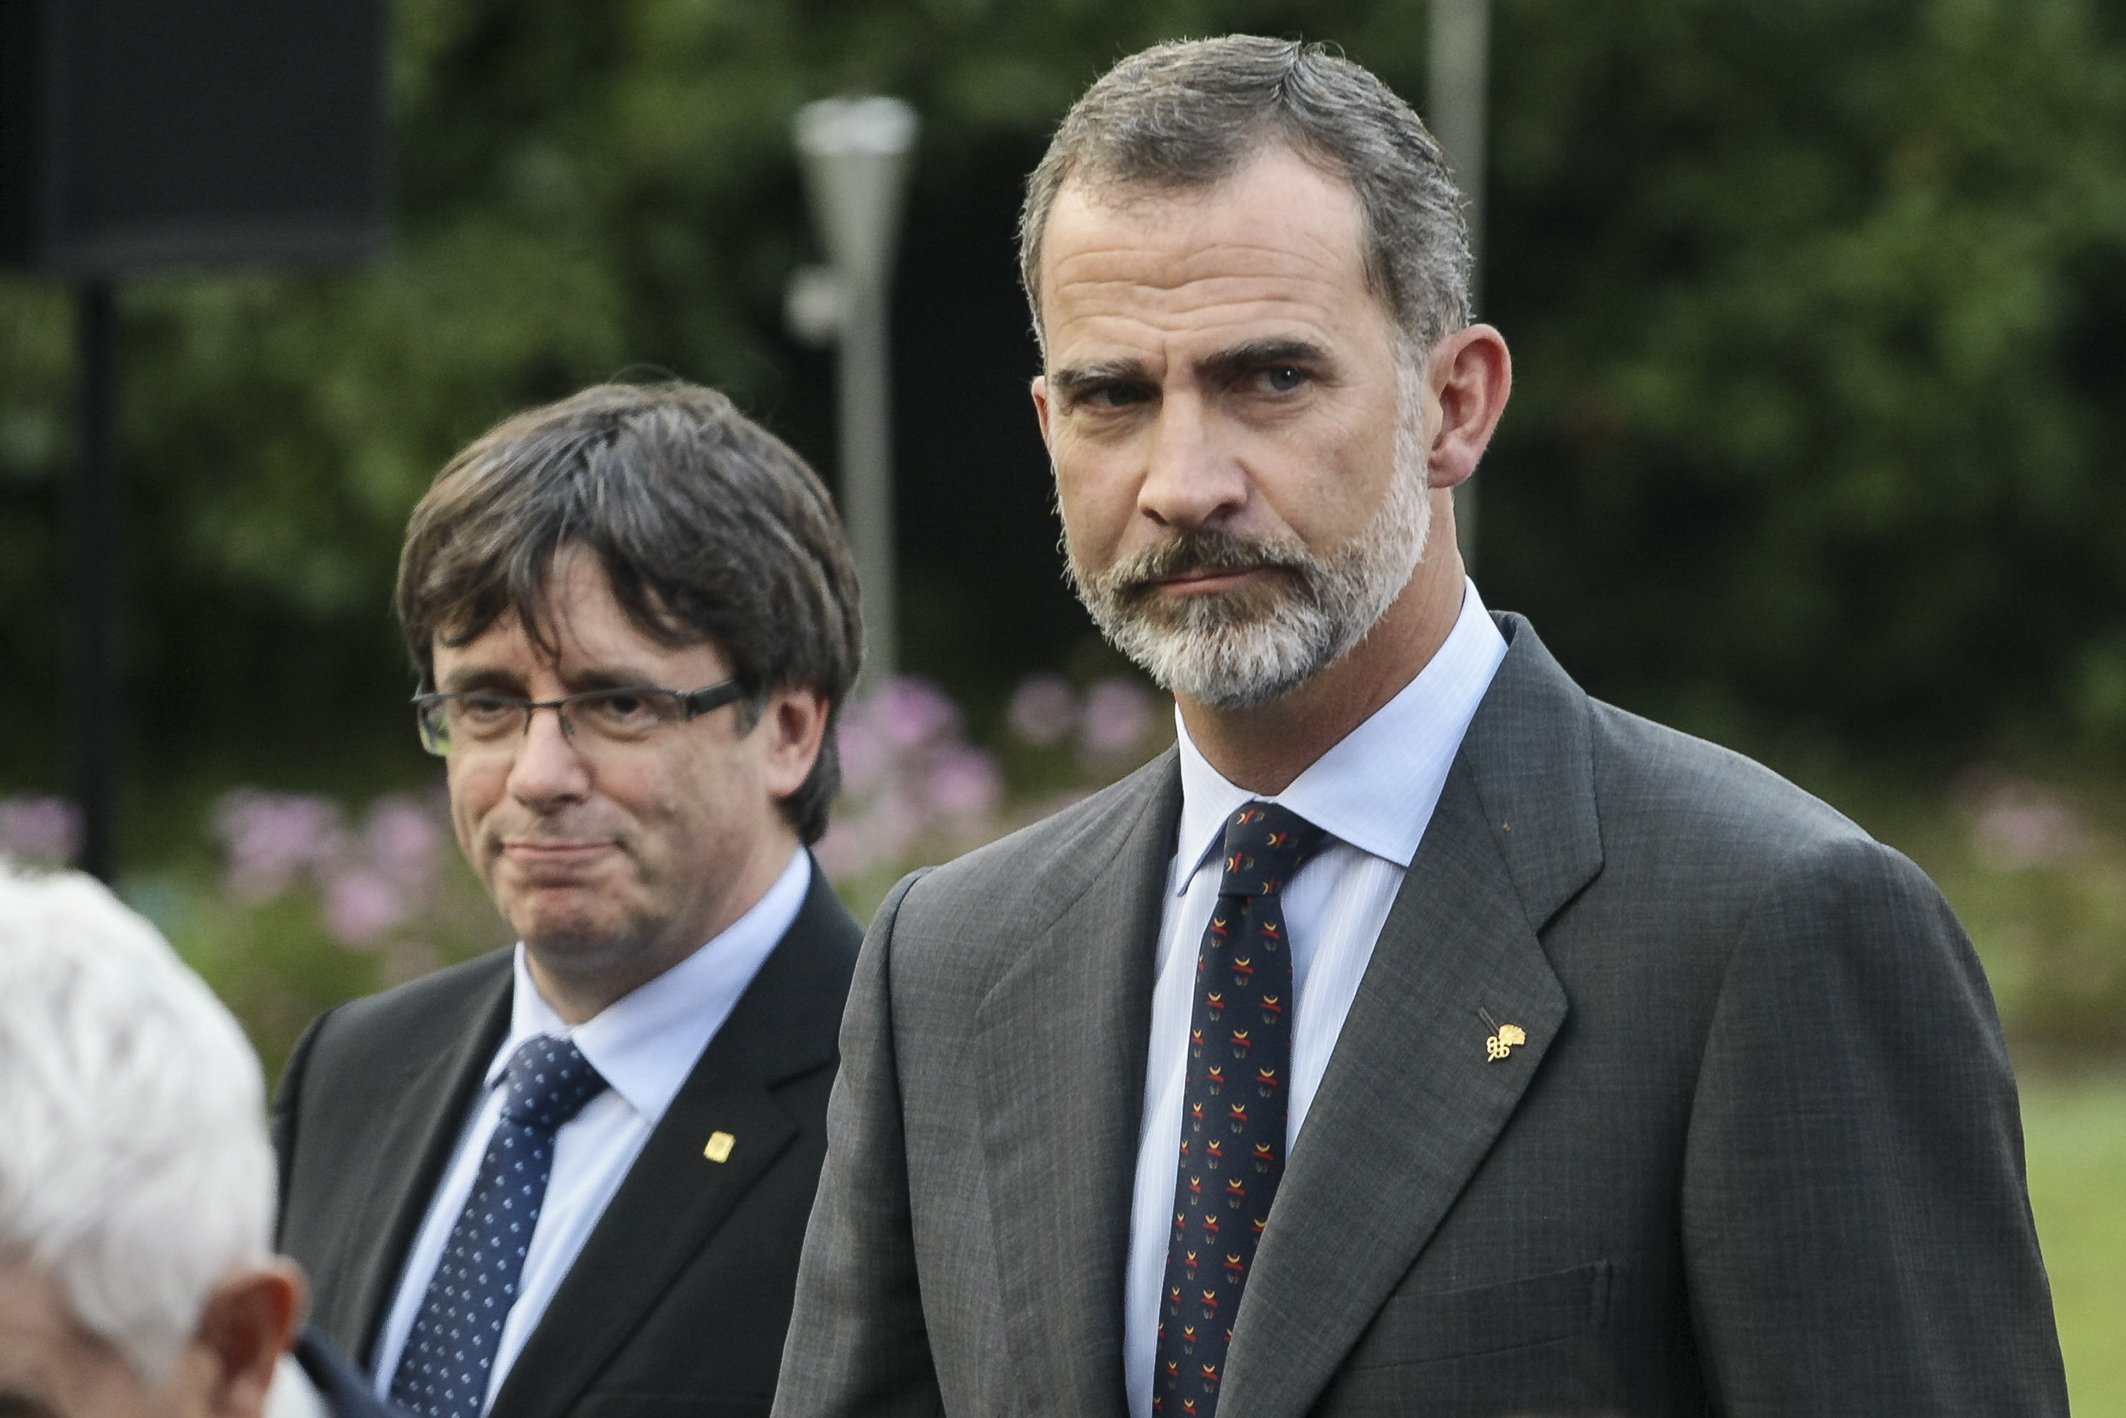 El rei amb polsera d'Espanya i criticant Puigdemont, la imatge ultra de Felip